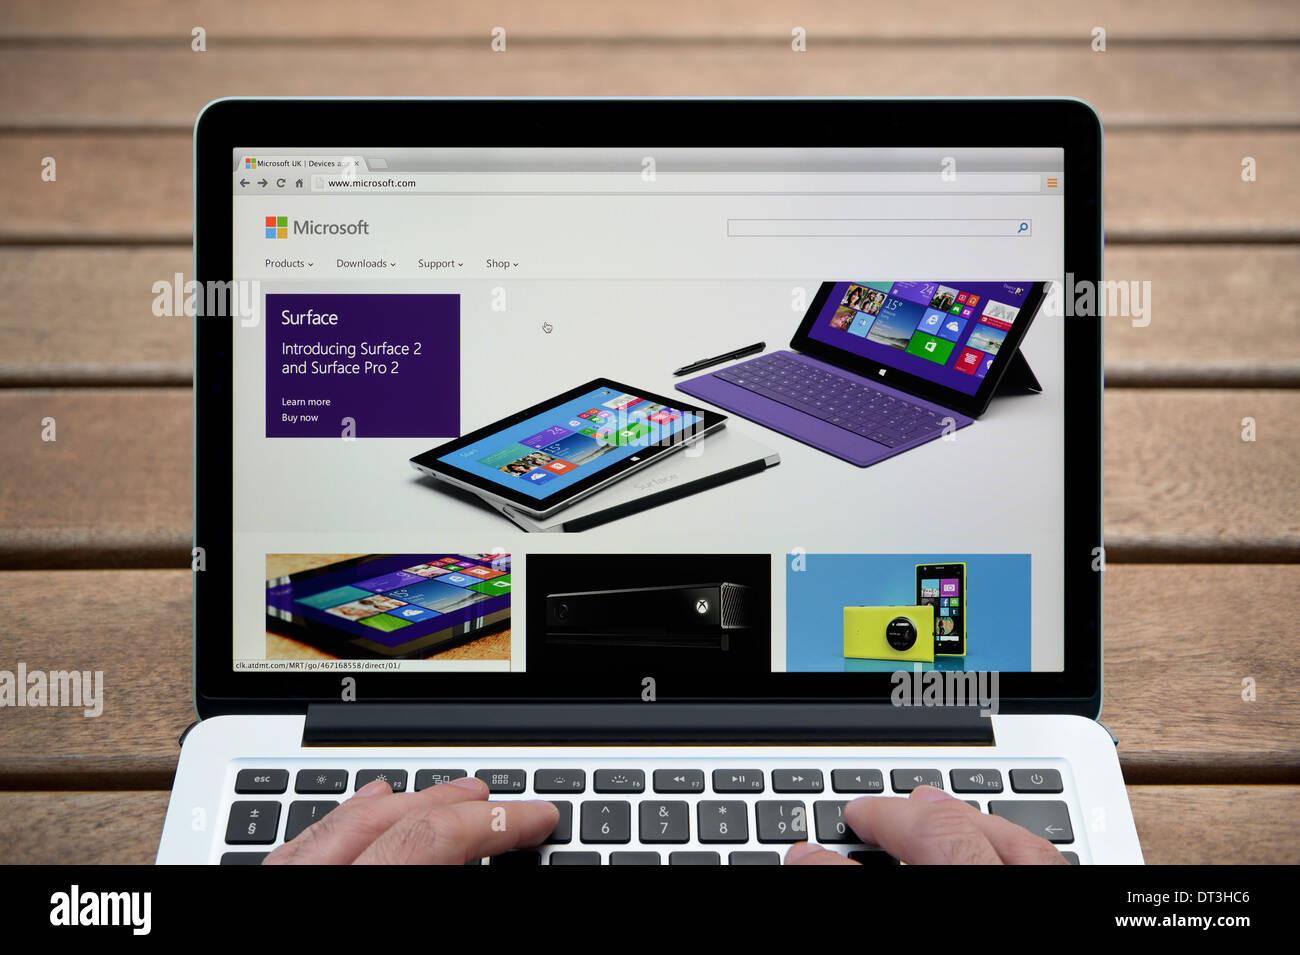 Le site Web de Microsoft sur un MacBook contre un banc en bois fond de plein air y compris les doigts d'un homme (usage éditorial uniquement). Banque D'Images